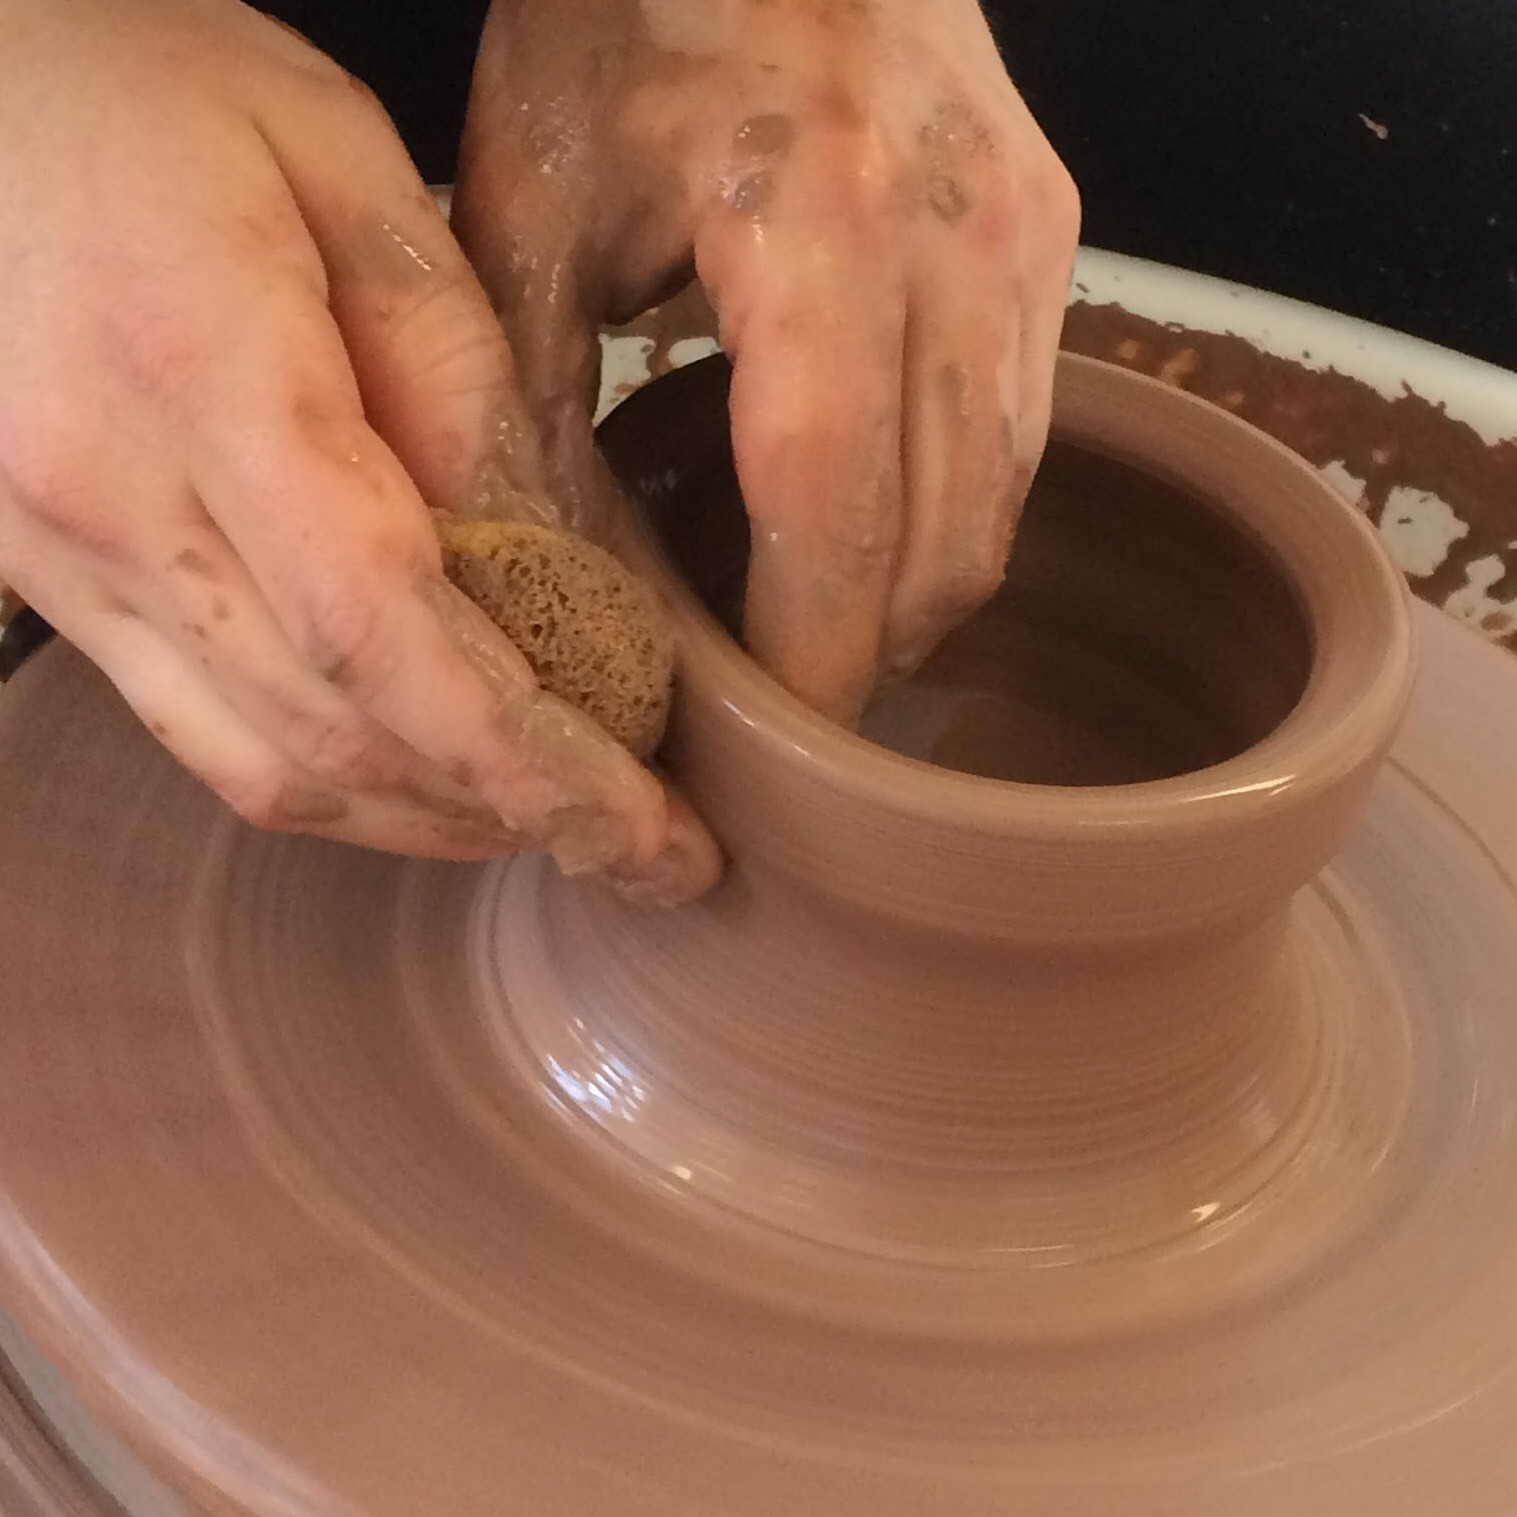 La poterie au tour pas à pas ; techniques de base et réalisation